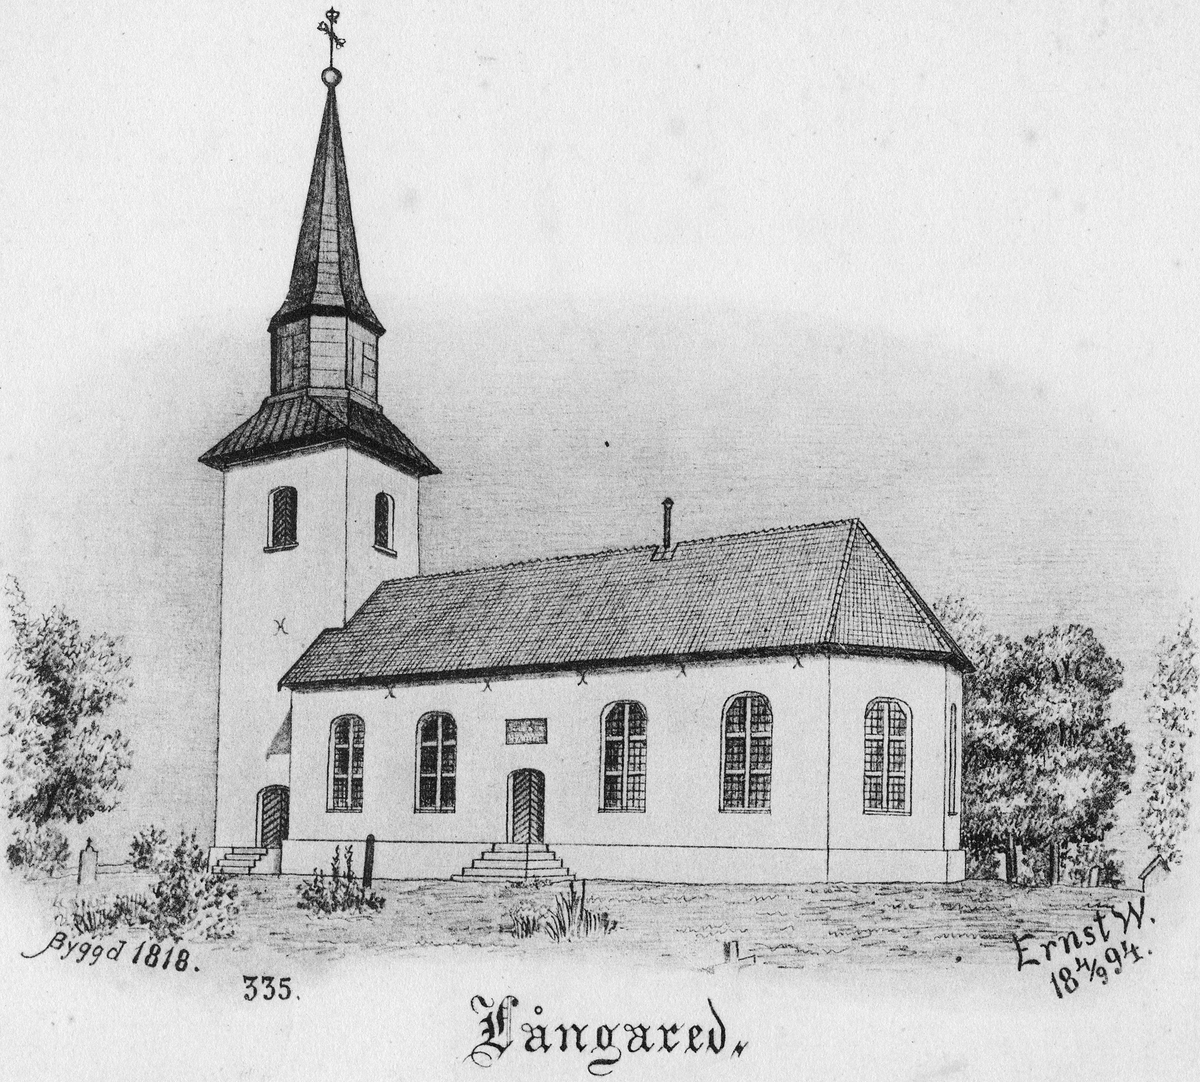 Bild av Långared kyrka tecknad av komminister Ernst Wennerblad. Text från vänster till höger "Byggd 1818." "335." "Långared" "Ernst W. 18 4/9 94."